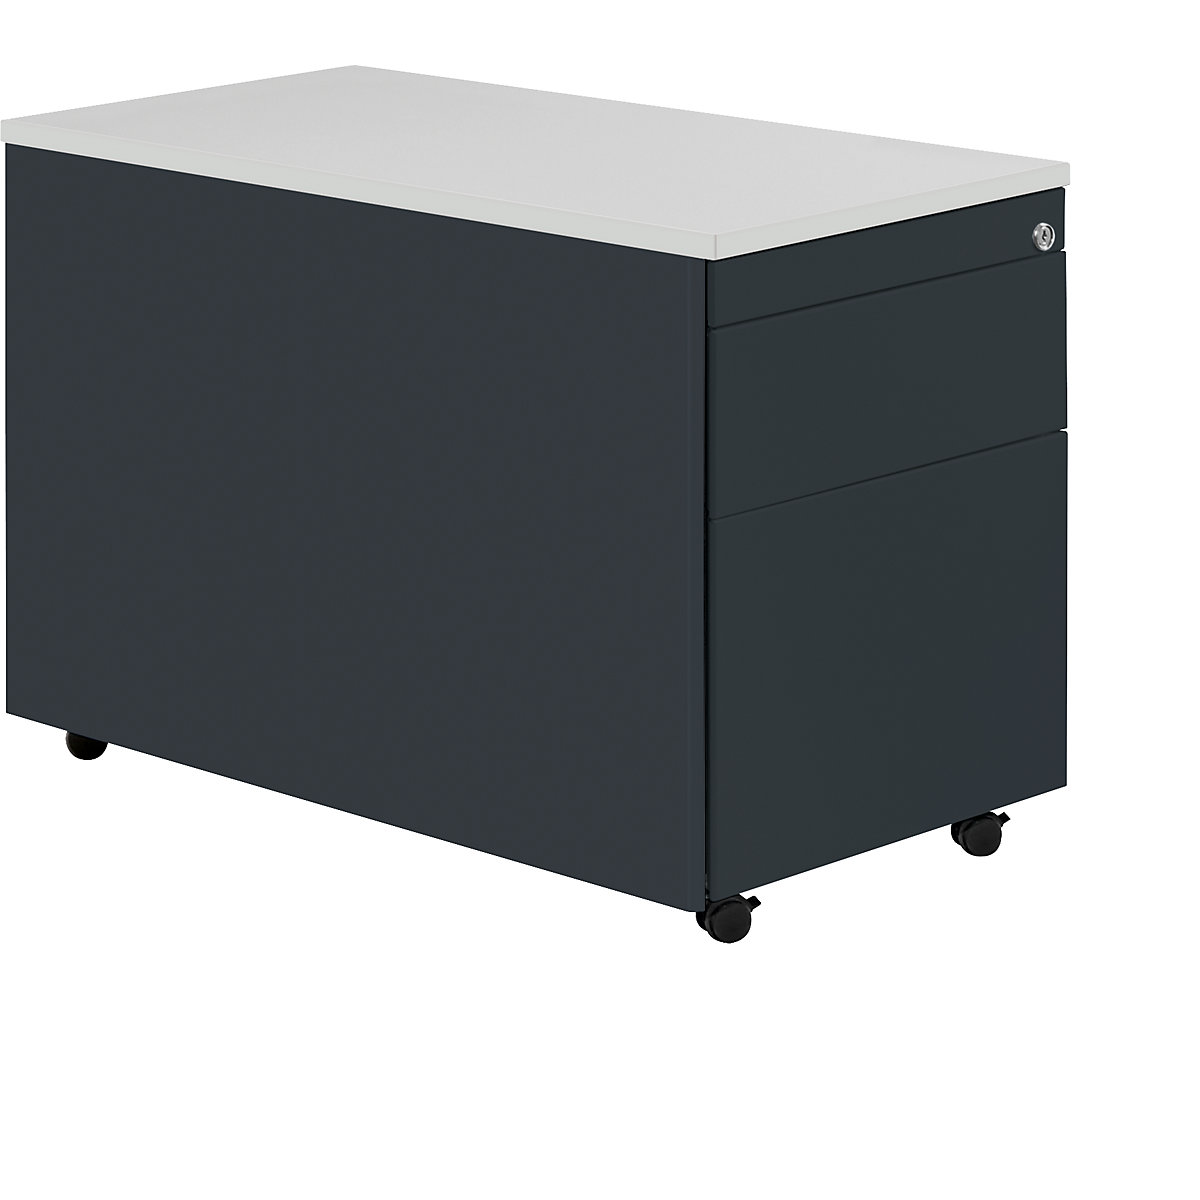 Zásuvkový kontajner s kolieskami – mauser, v x š 579 x 800 mm, plastová doska, 1 zásuvka na materiál, 1 závesná registratúra, antracitová / antracitová / svetlošedá-7